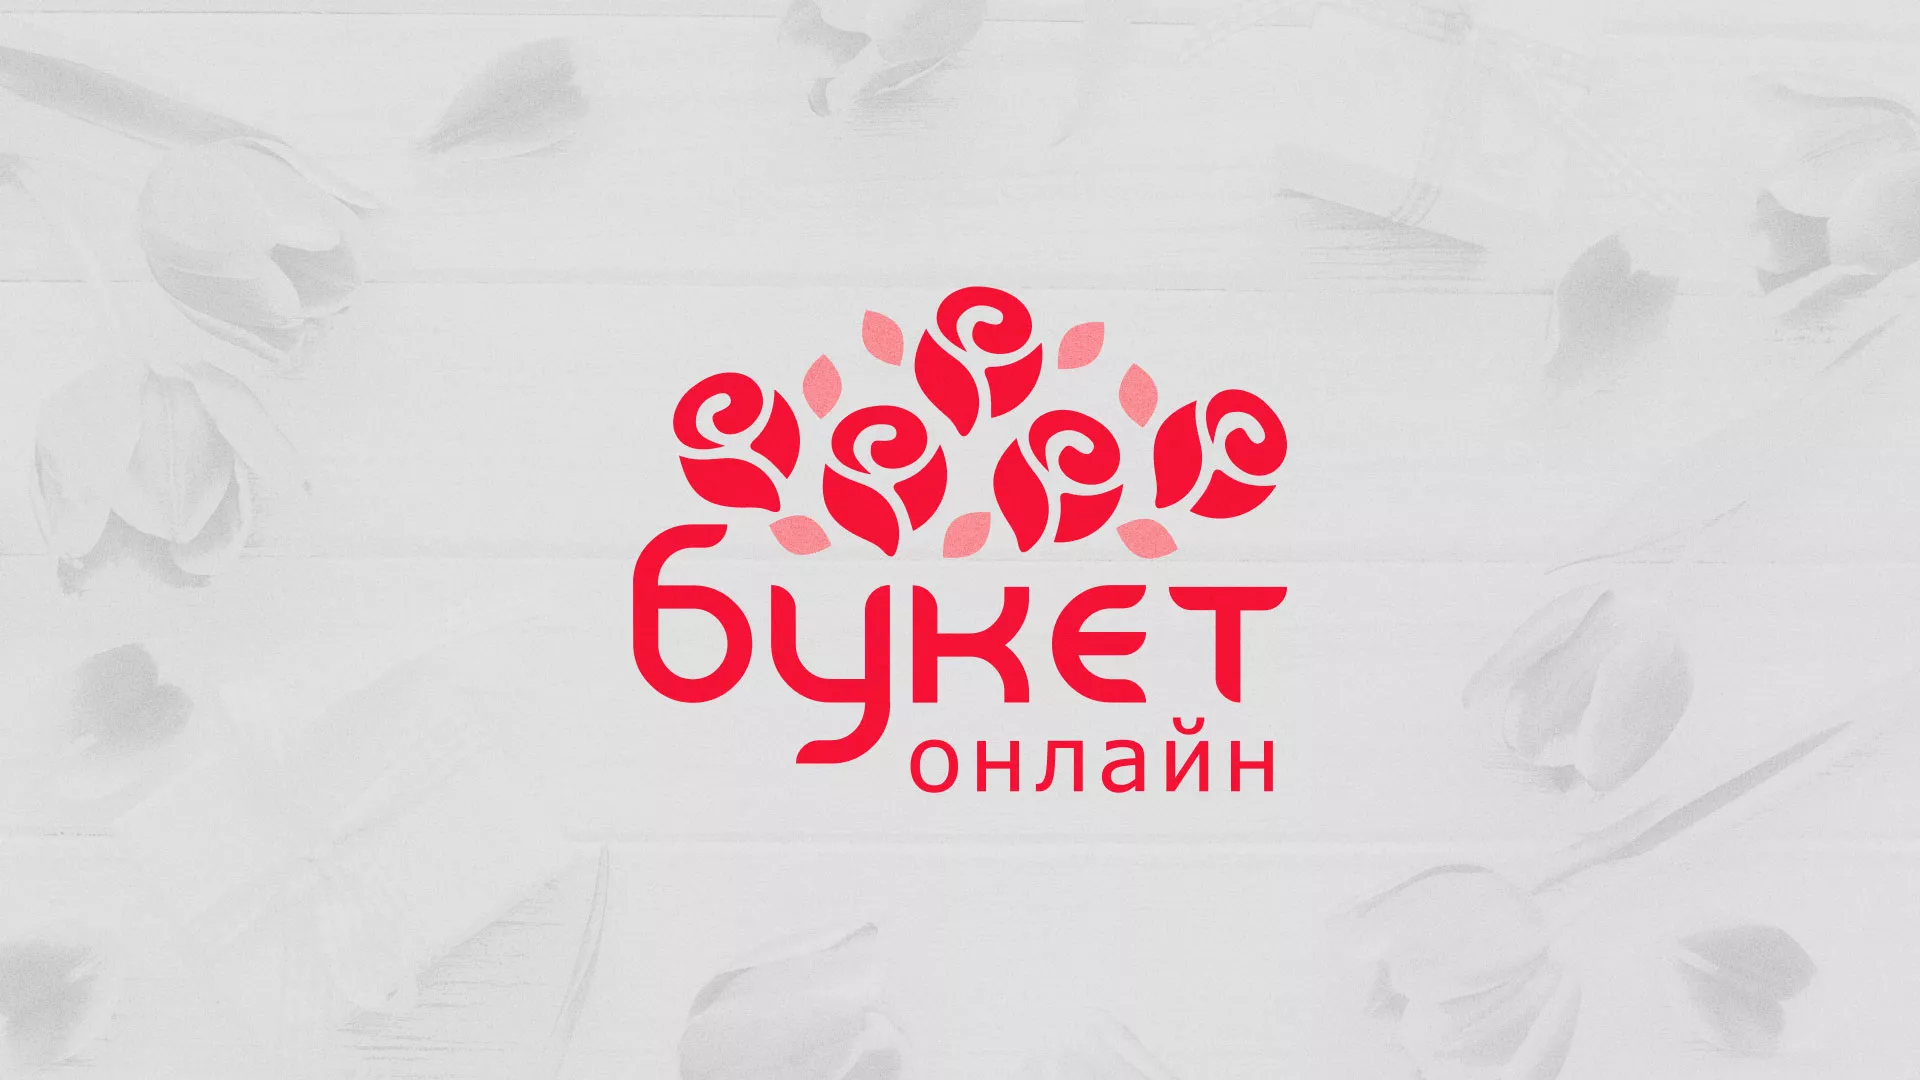 Создание интернет-магазина «Букет-онлайн» по цветам в Александровске-Сахалинском